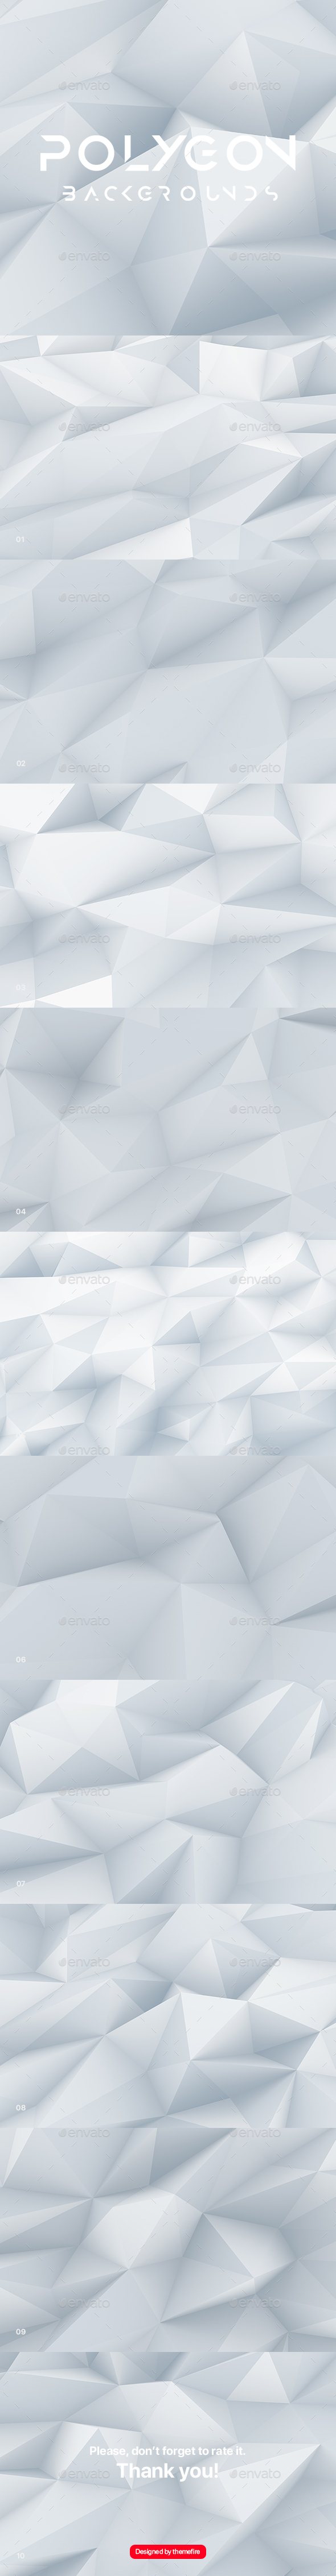 White Polygon Background Set